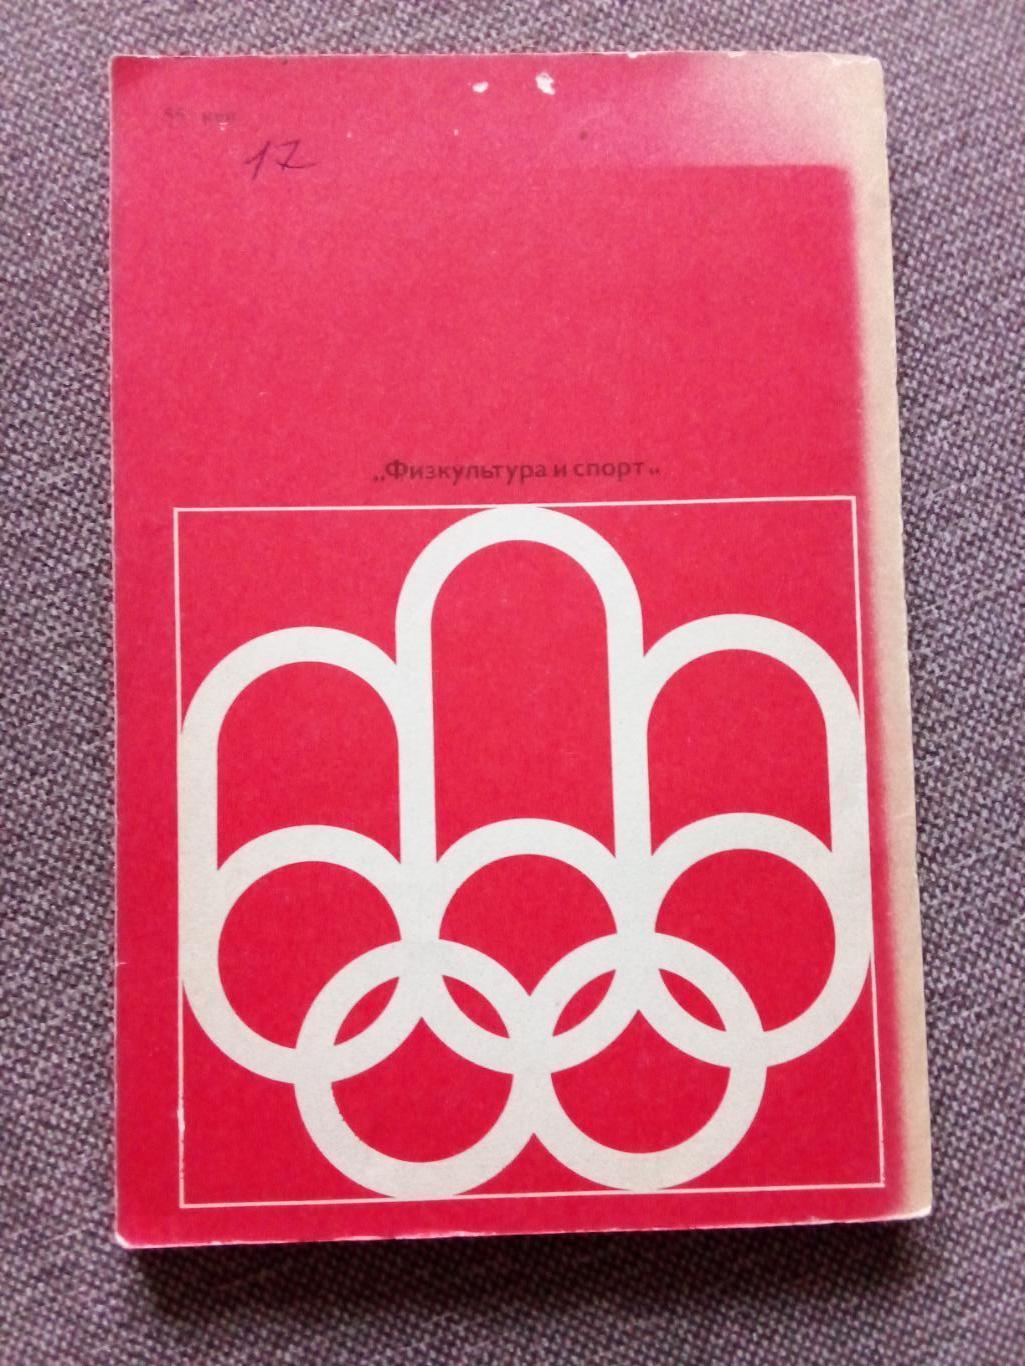 А. Кулешов - Ступени Монреаля 1977 г. Олимпиада 1976 г. Олимпийские игры 1